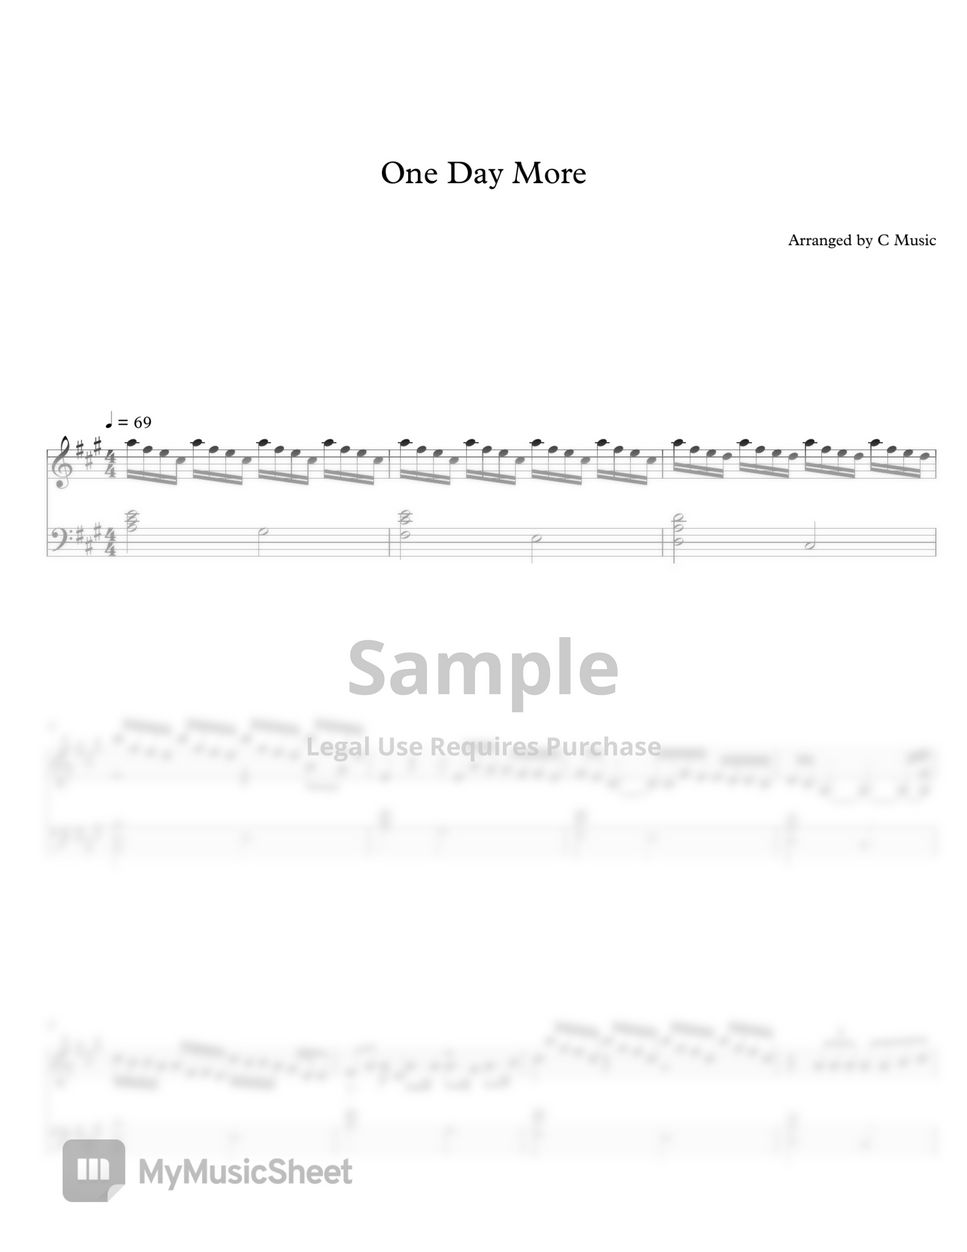 Claude-Michel Schönberg - One Day More (Les Misérables) by C Music